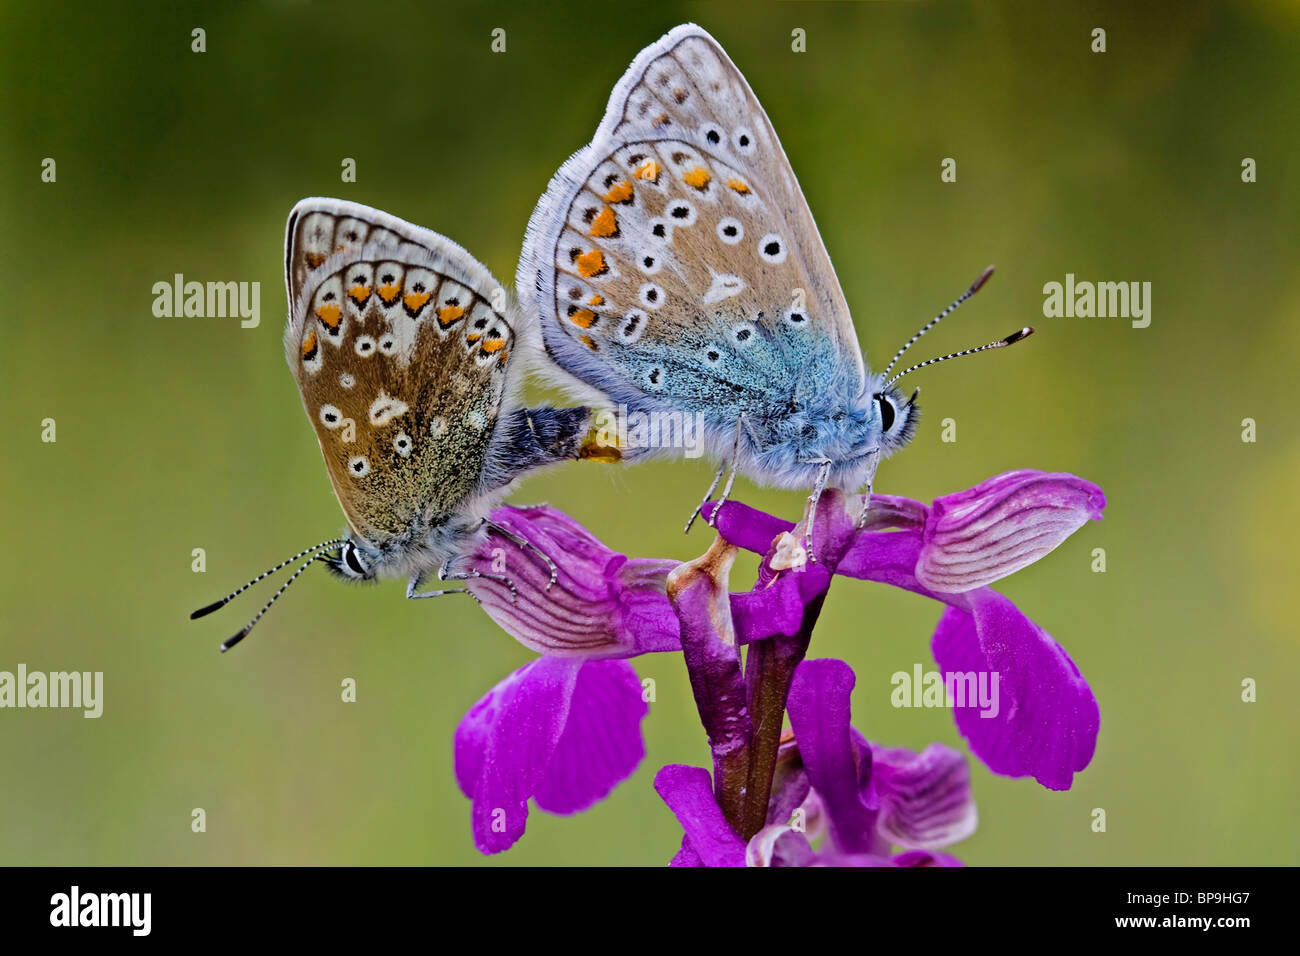 Las mariposas azules común mariposa Polyommatus icarus apareamiento alas verde orquídea Anacamptis morio Foto de stock